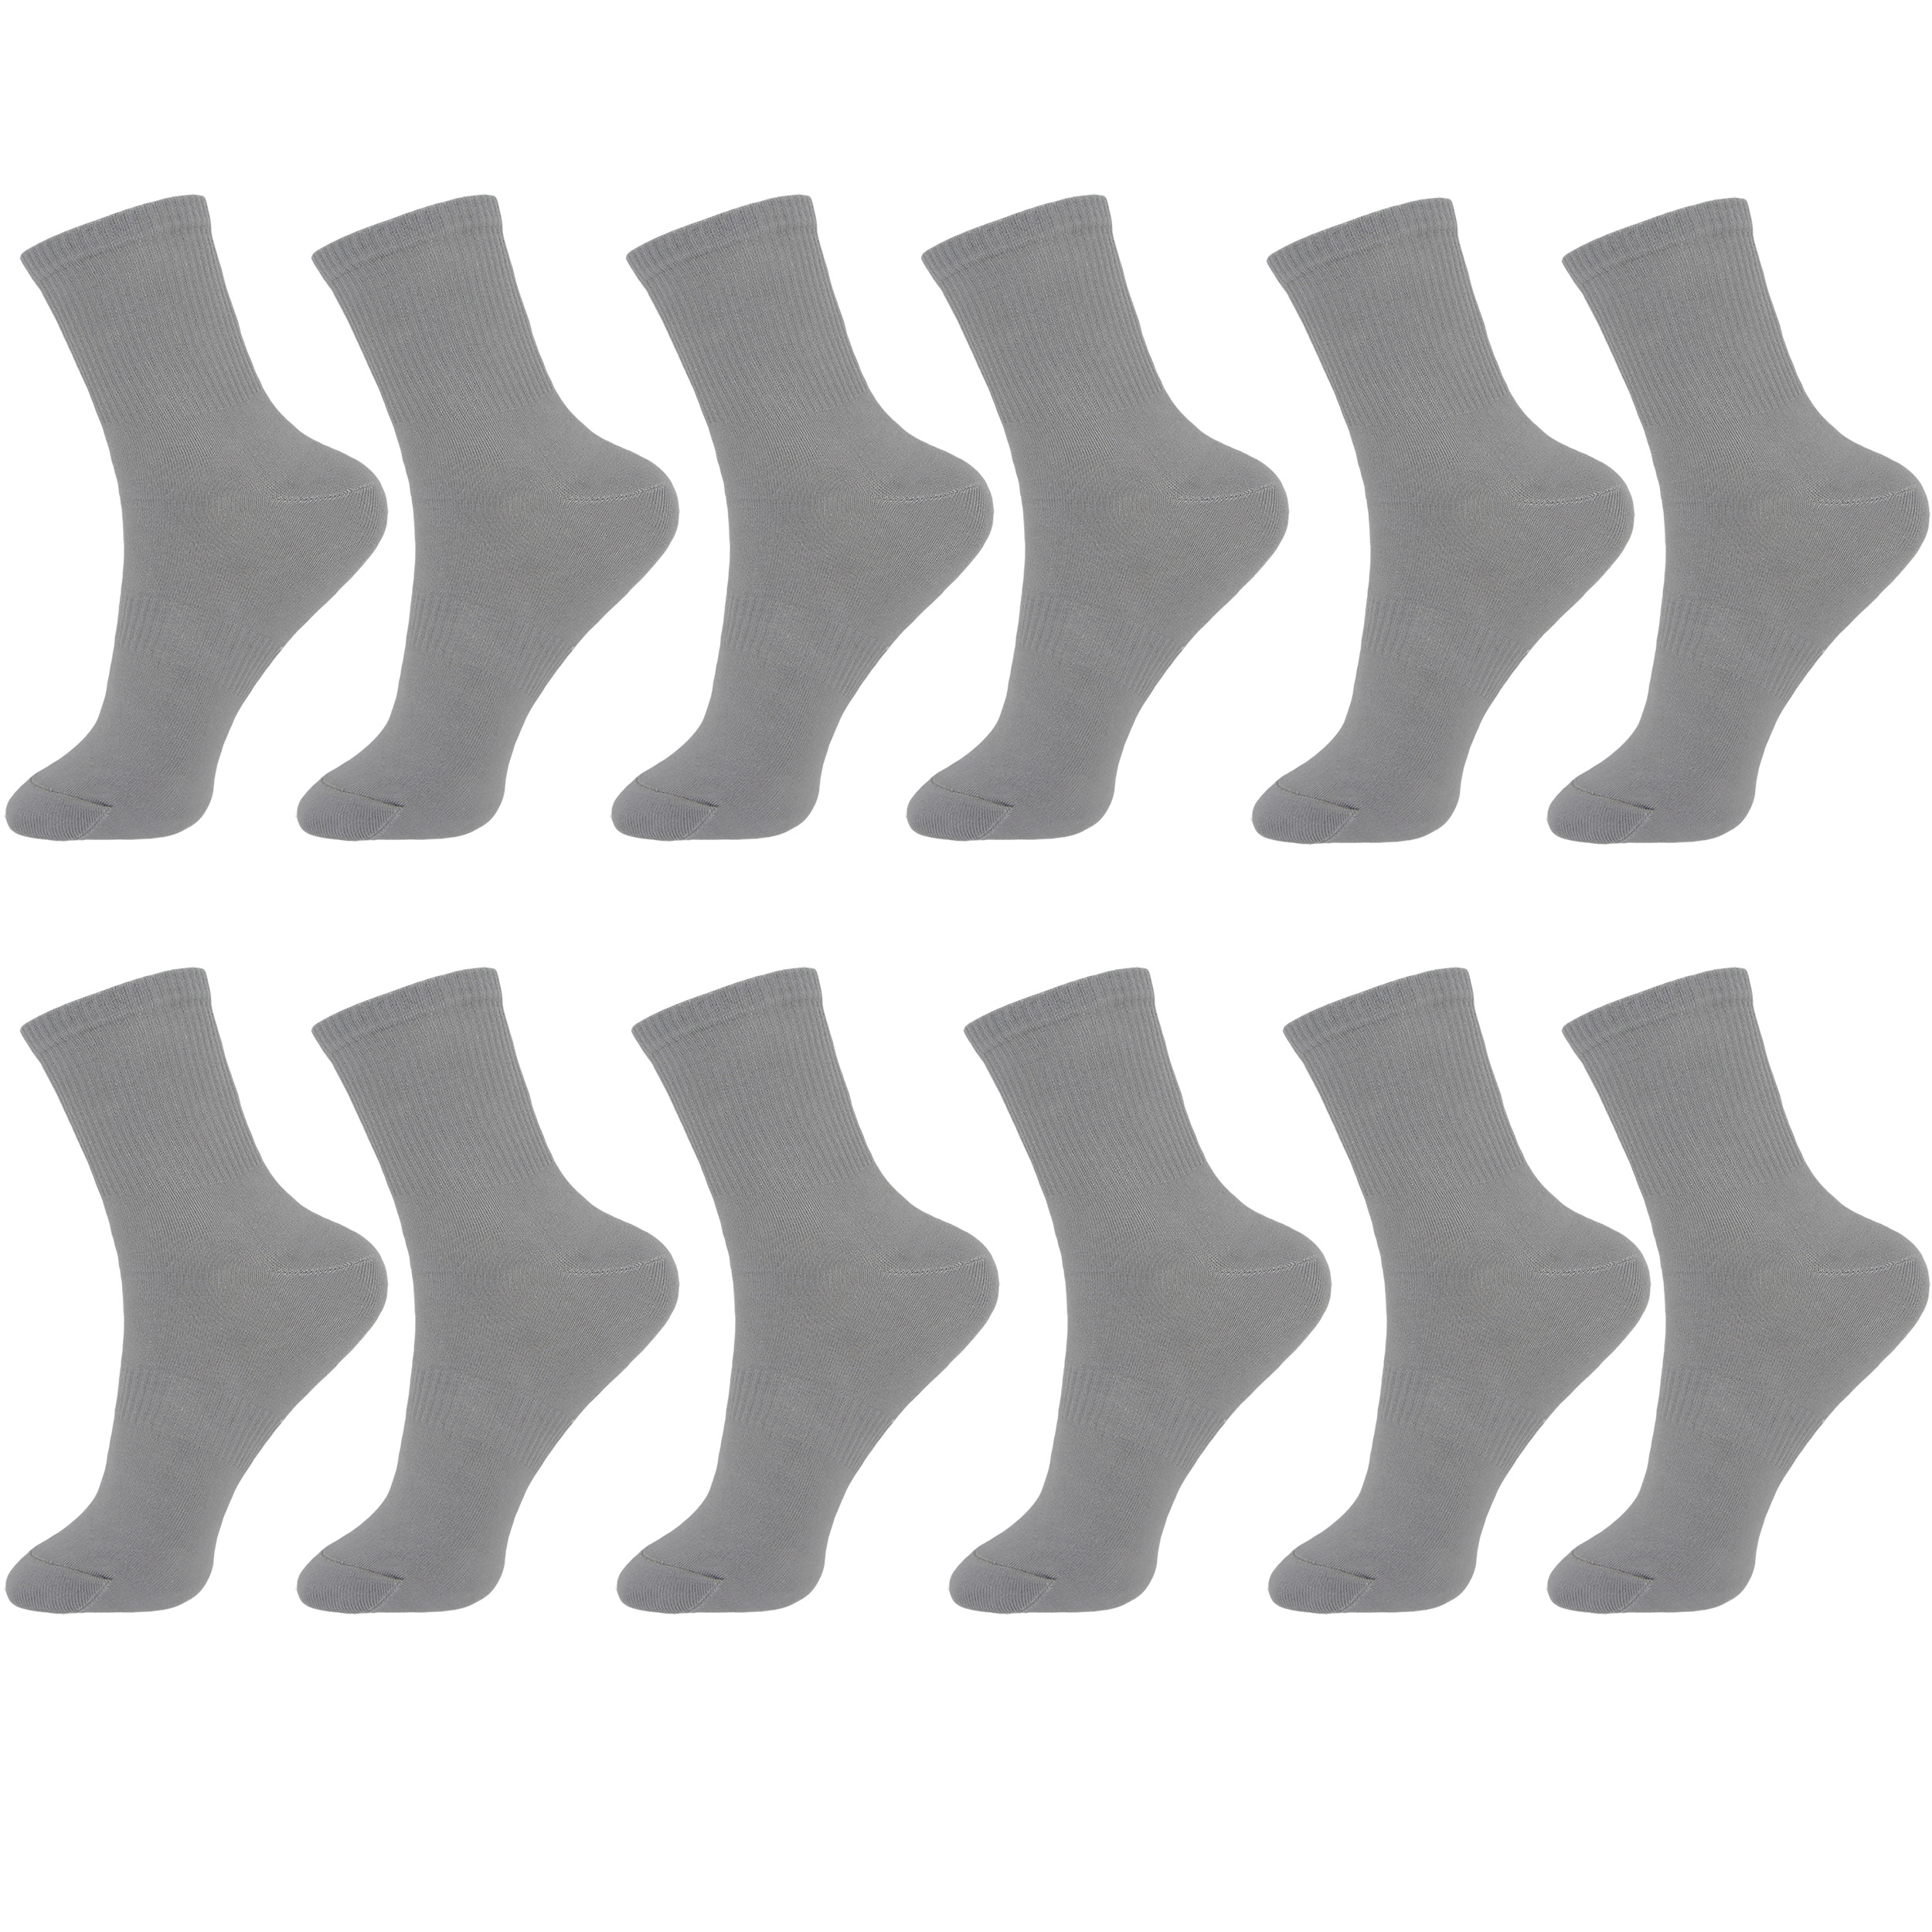  جوراب مردانه ادیب مدل کبریتی کد 3944 بسته 12 عددی